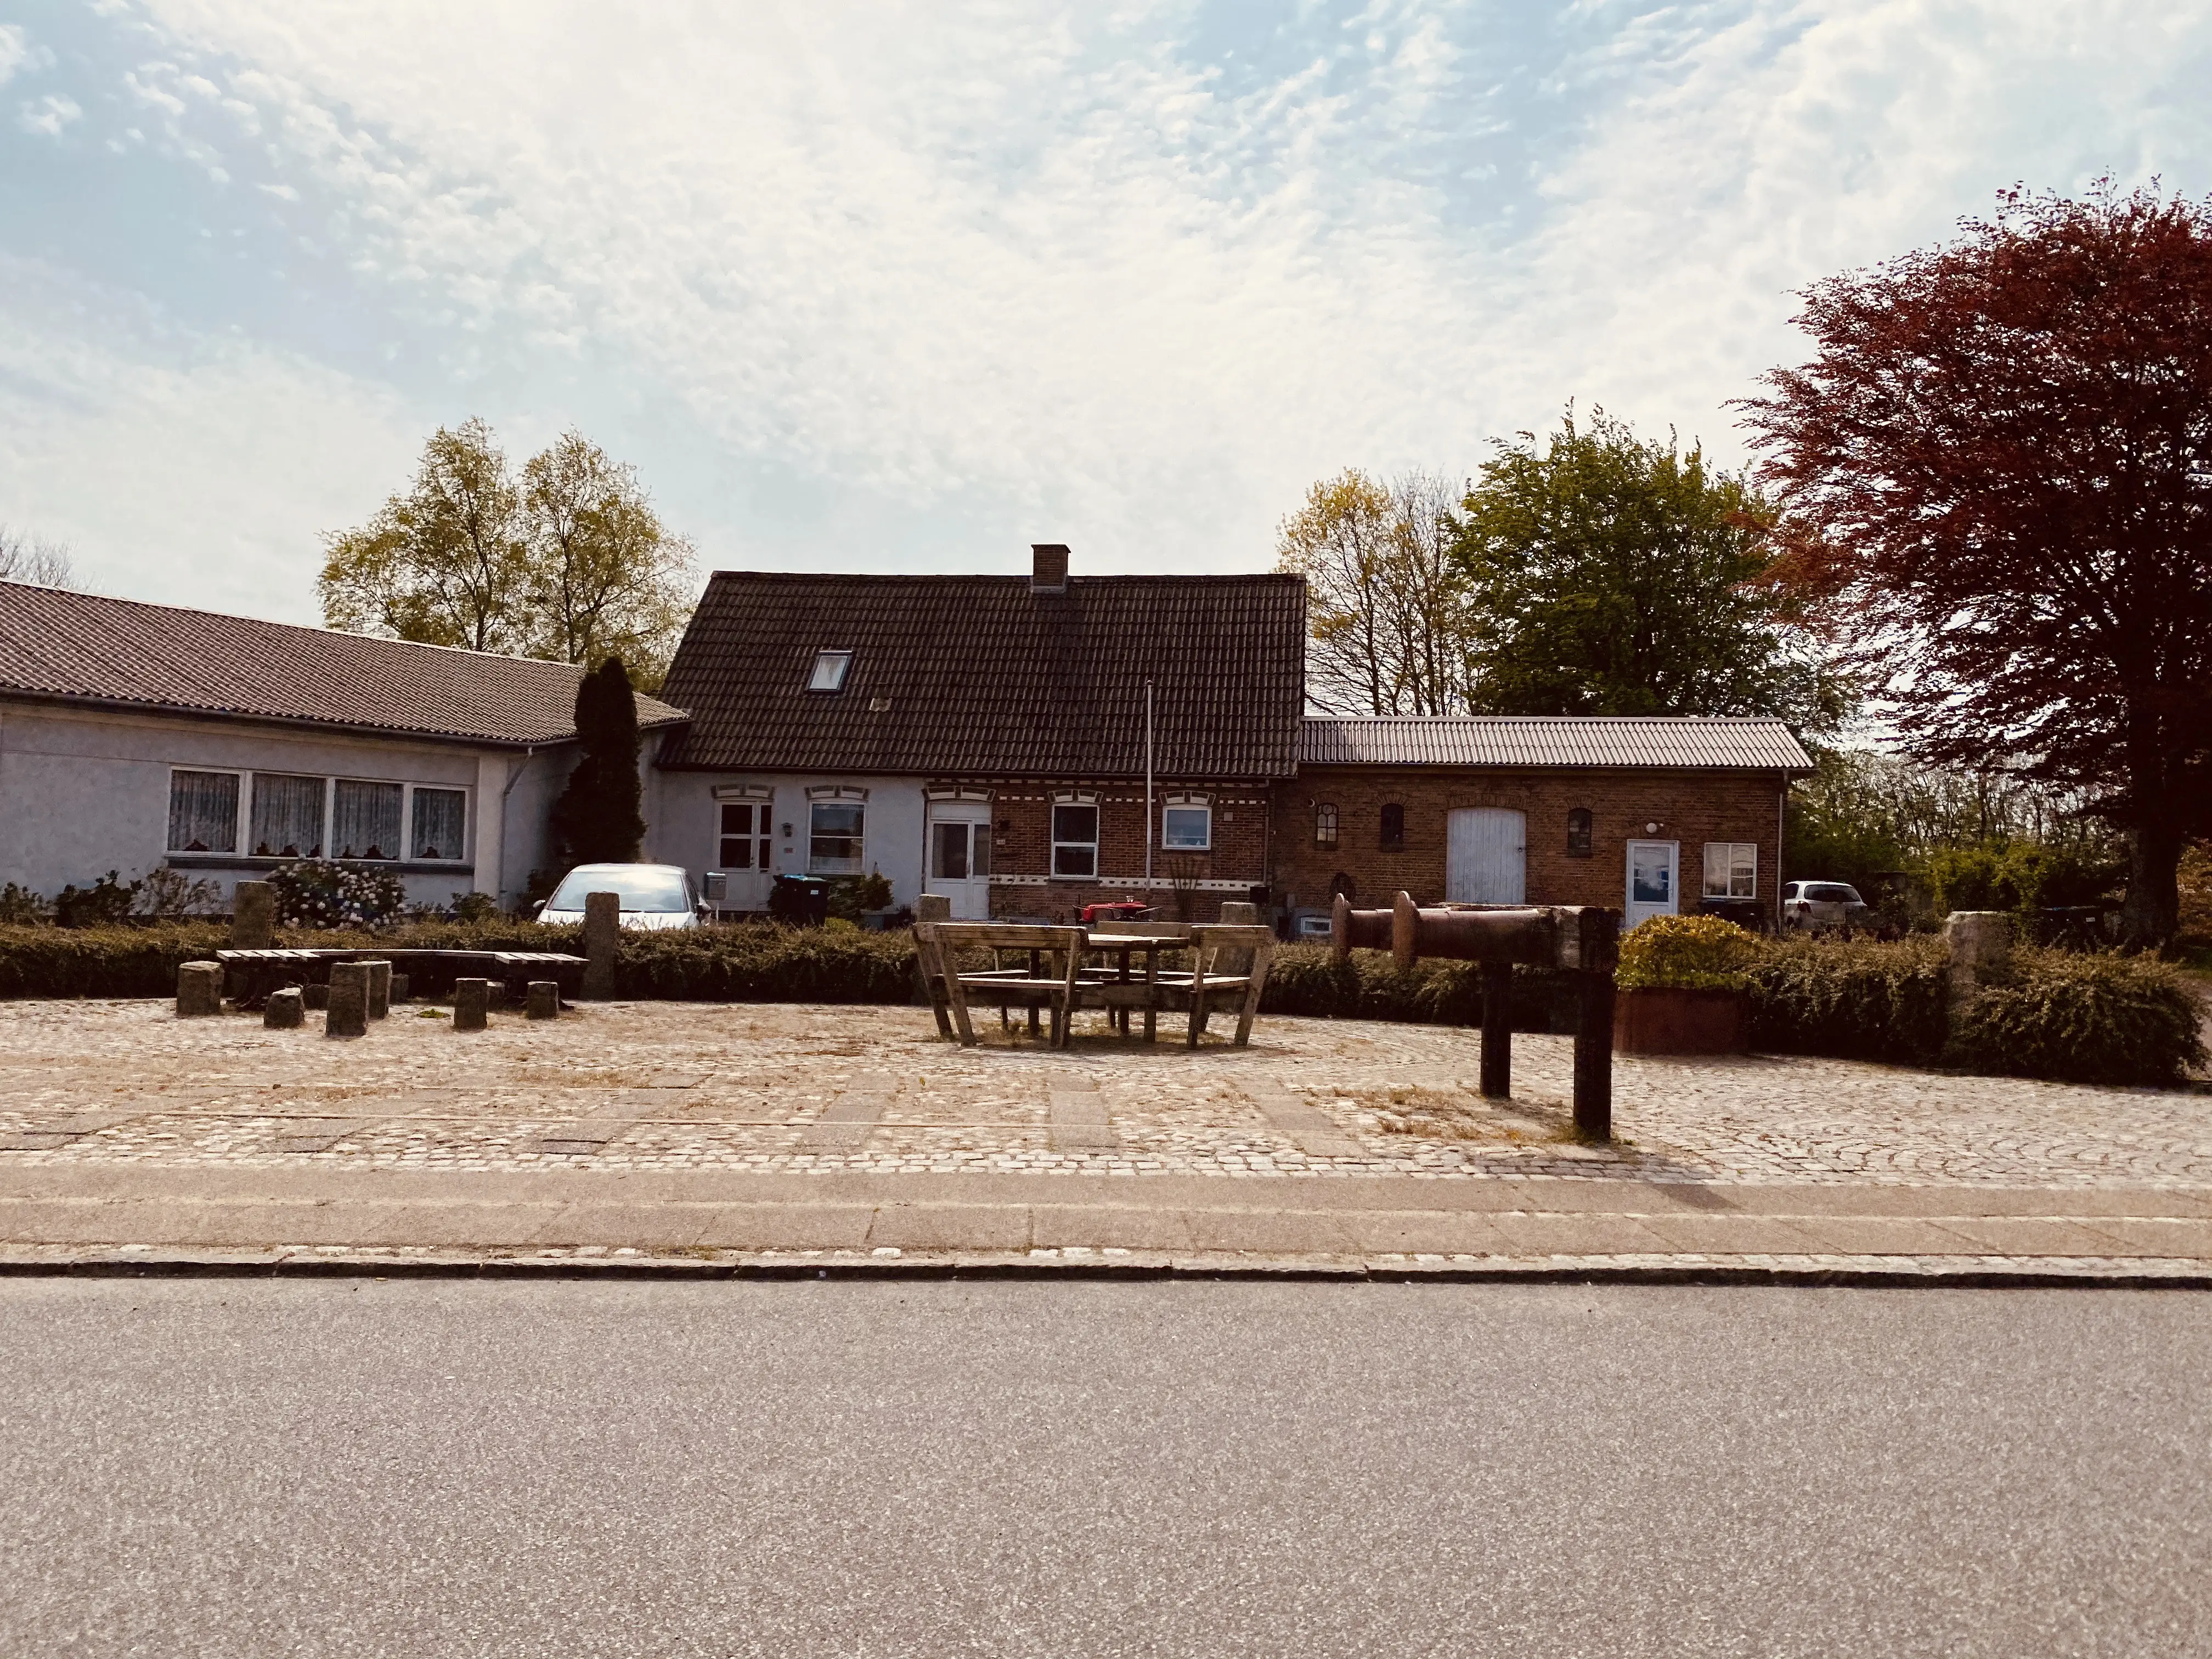 Billede af Branderup Station - bemærk den gamle stopbom forrest til højre i billedet.